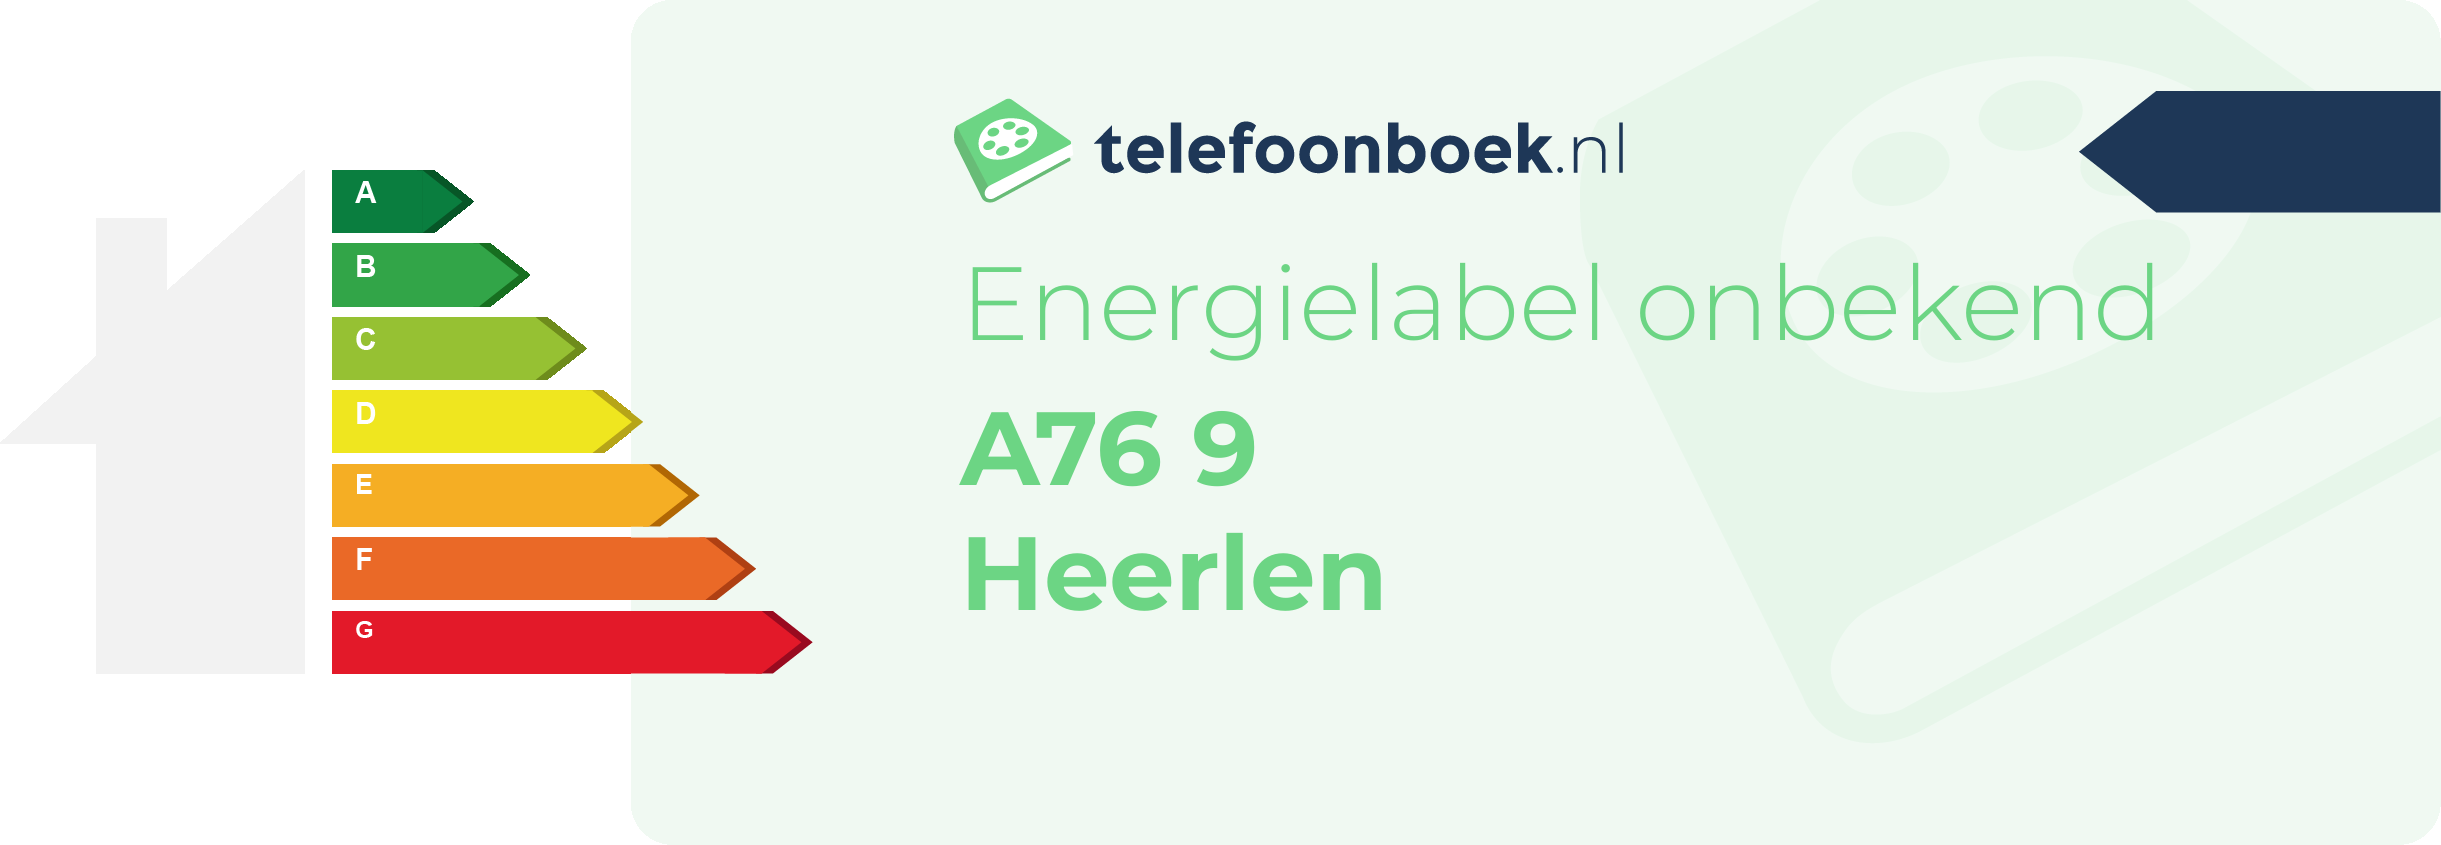 Energielabel A76 9 Heerlen